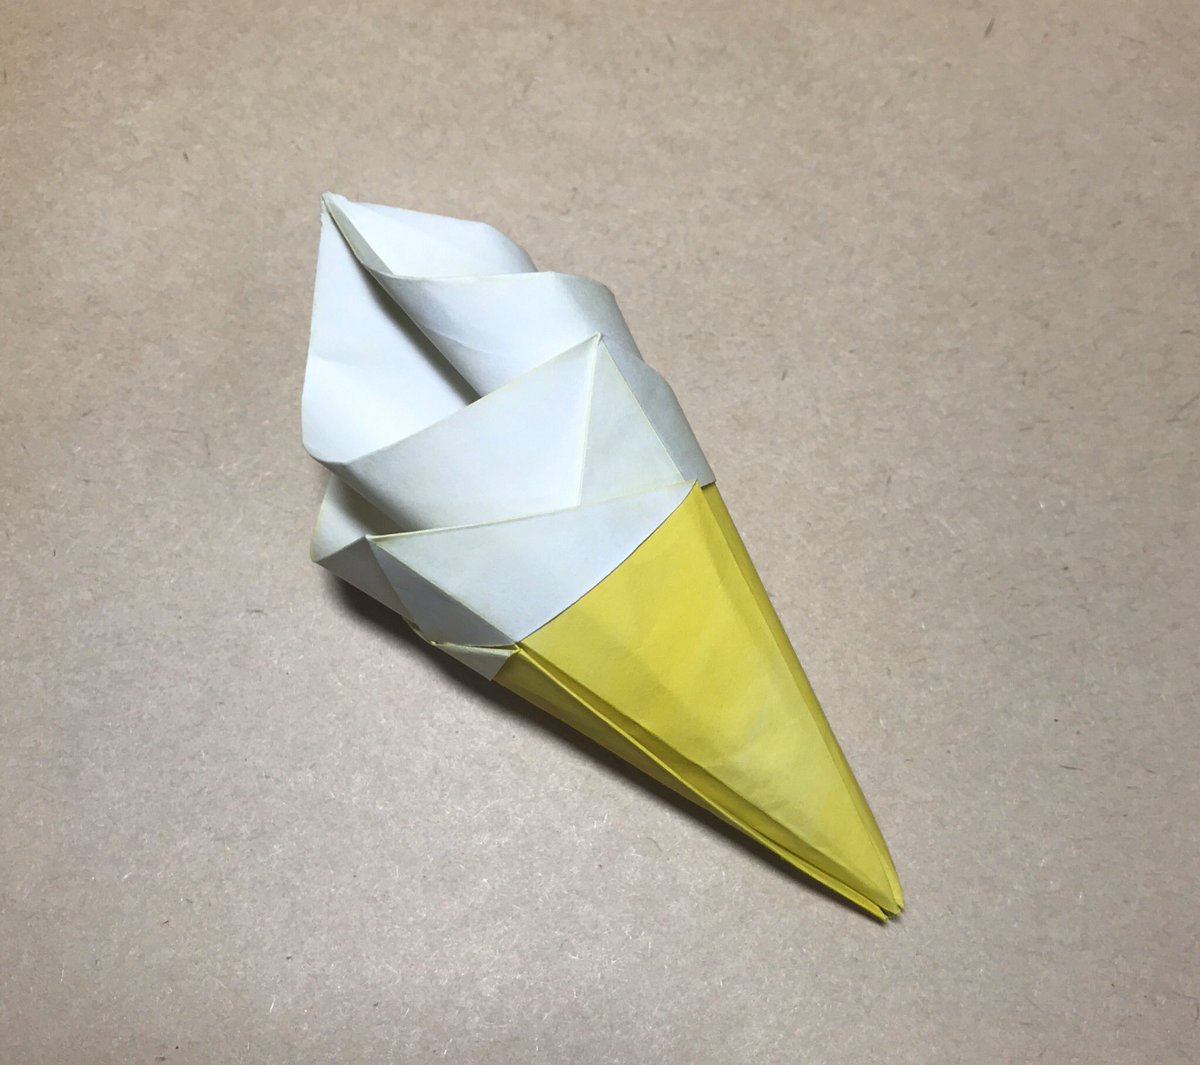 Pyotr ソフトクリームv4 1 創作 Origami Abraham の人柱となりました 最近折り紙 してなかったけどやっぱり楽しいですね 最後 立体になるところがとても気持ちいい